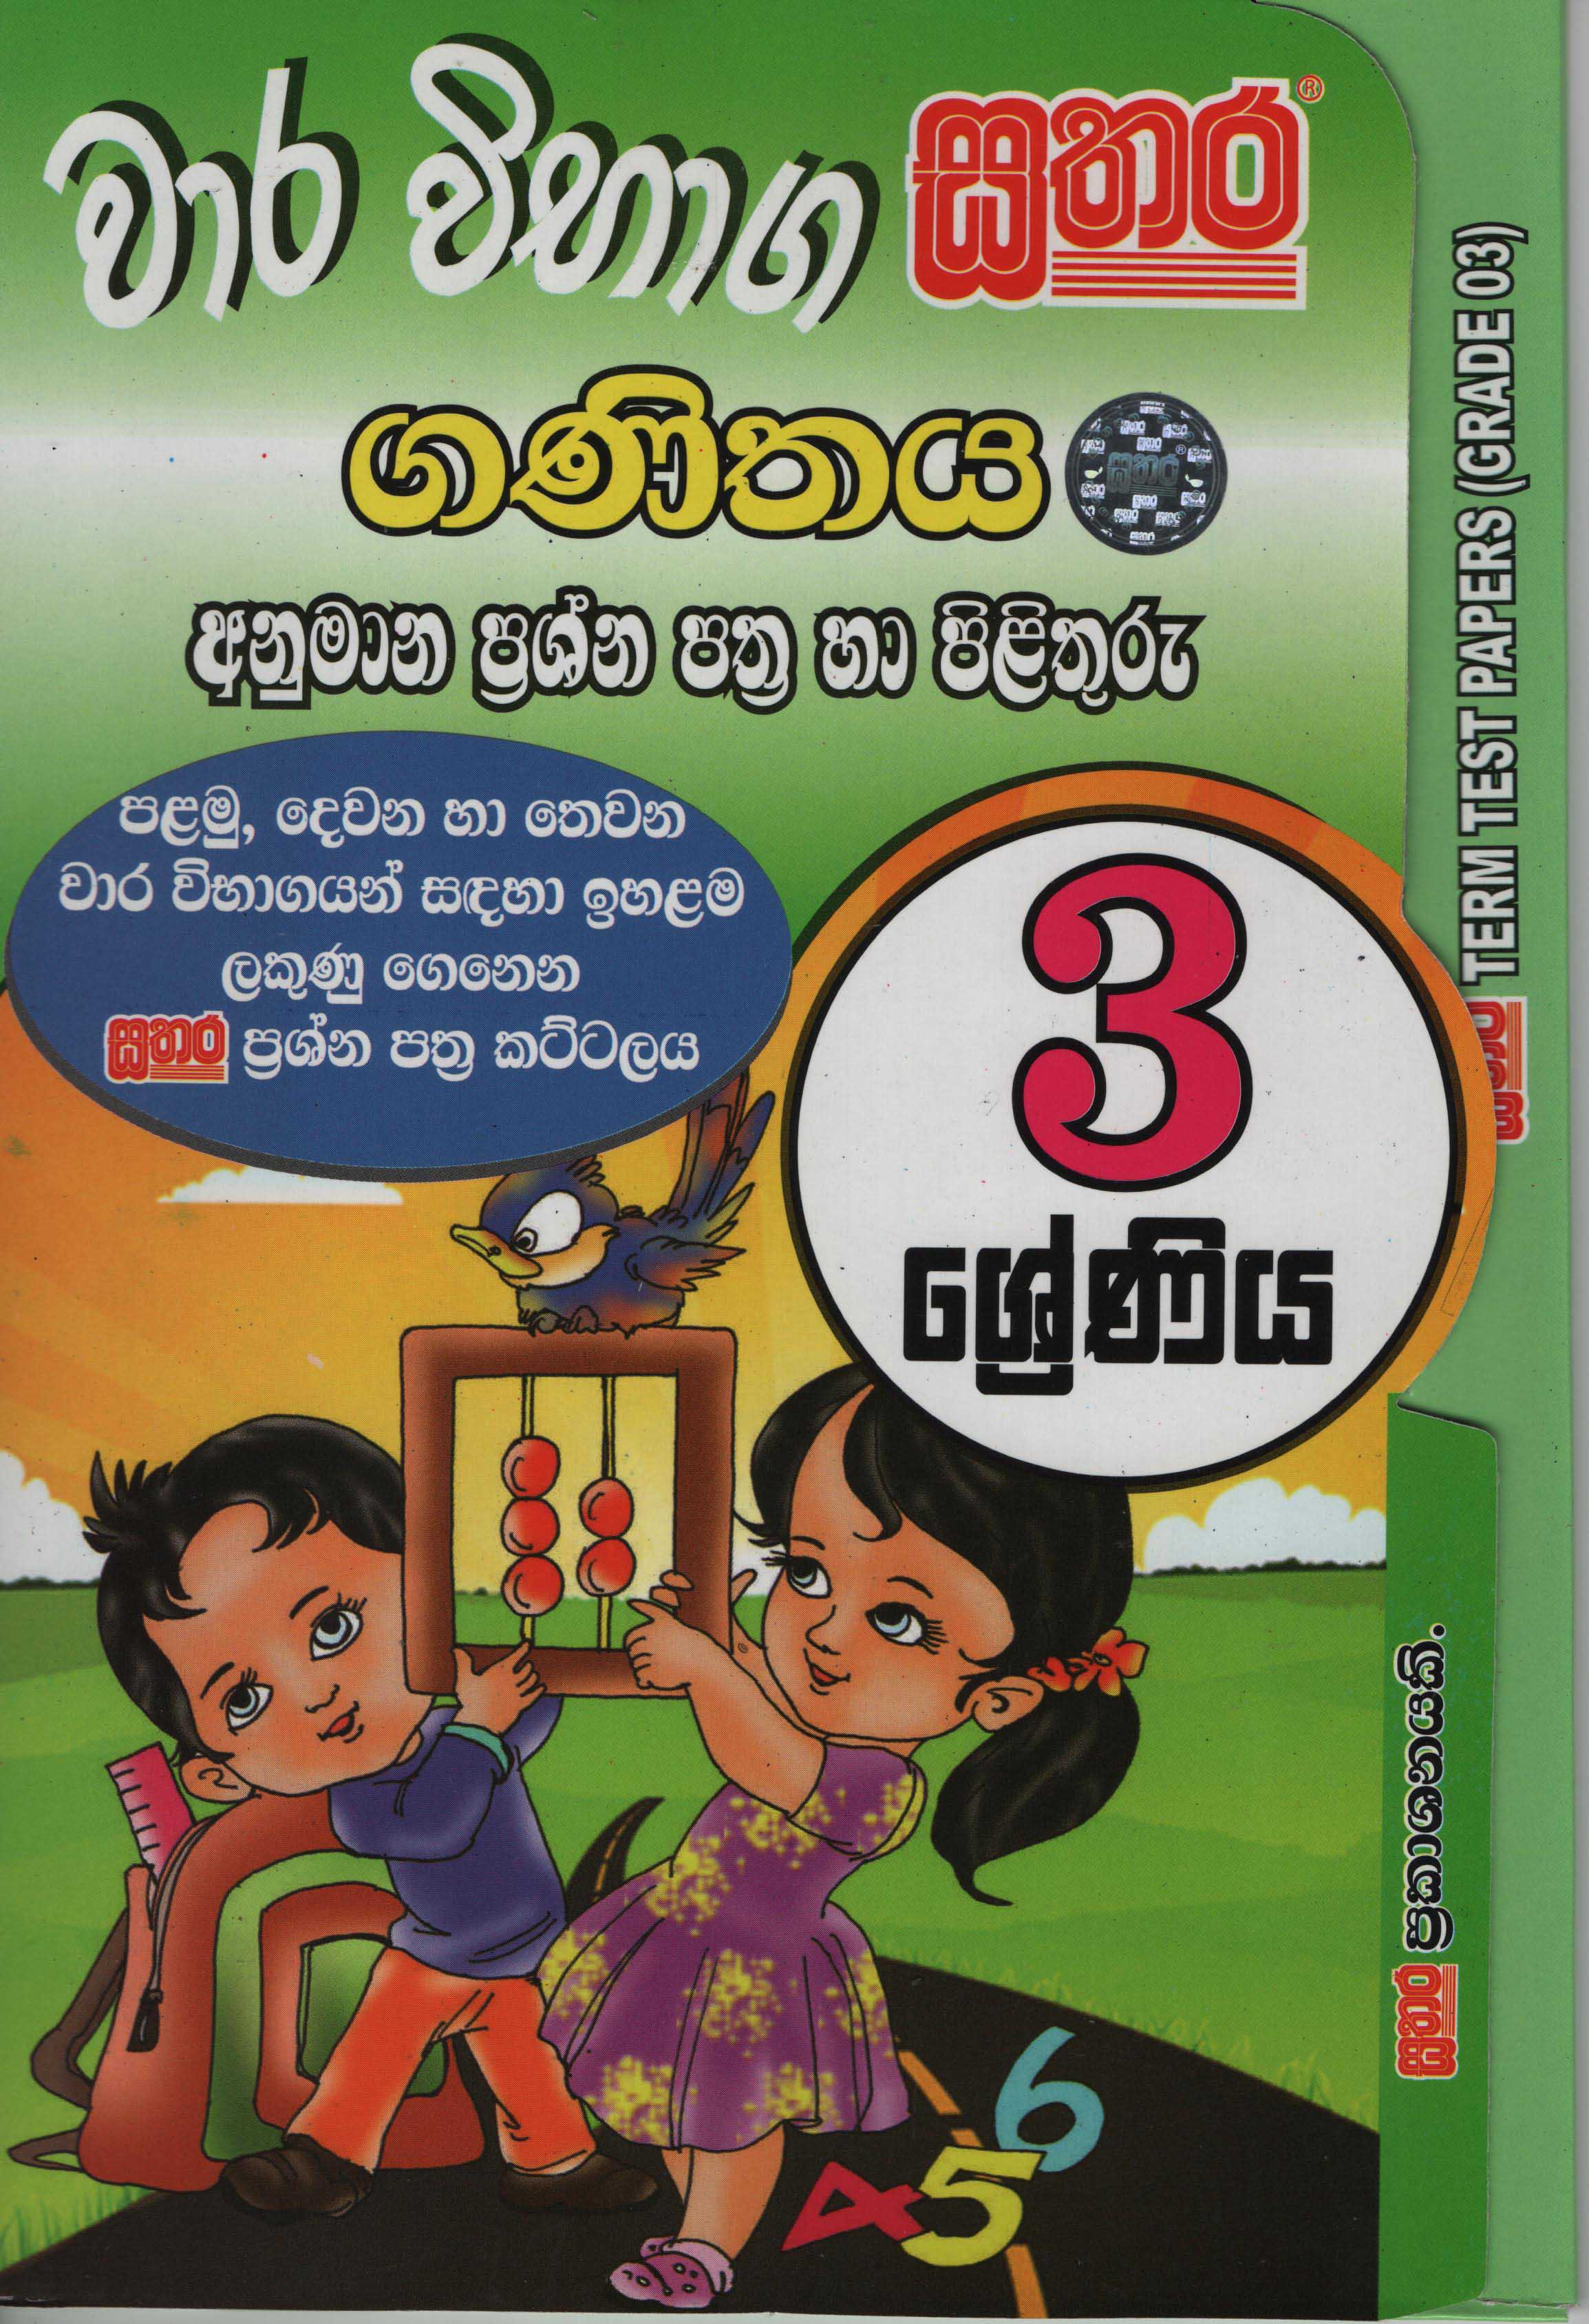 Sathara Wara Vibhaga Ganithaya? Grade 3